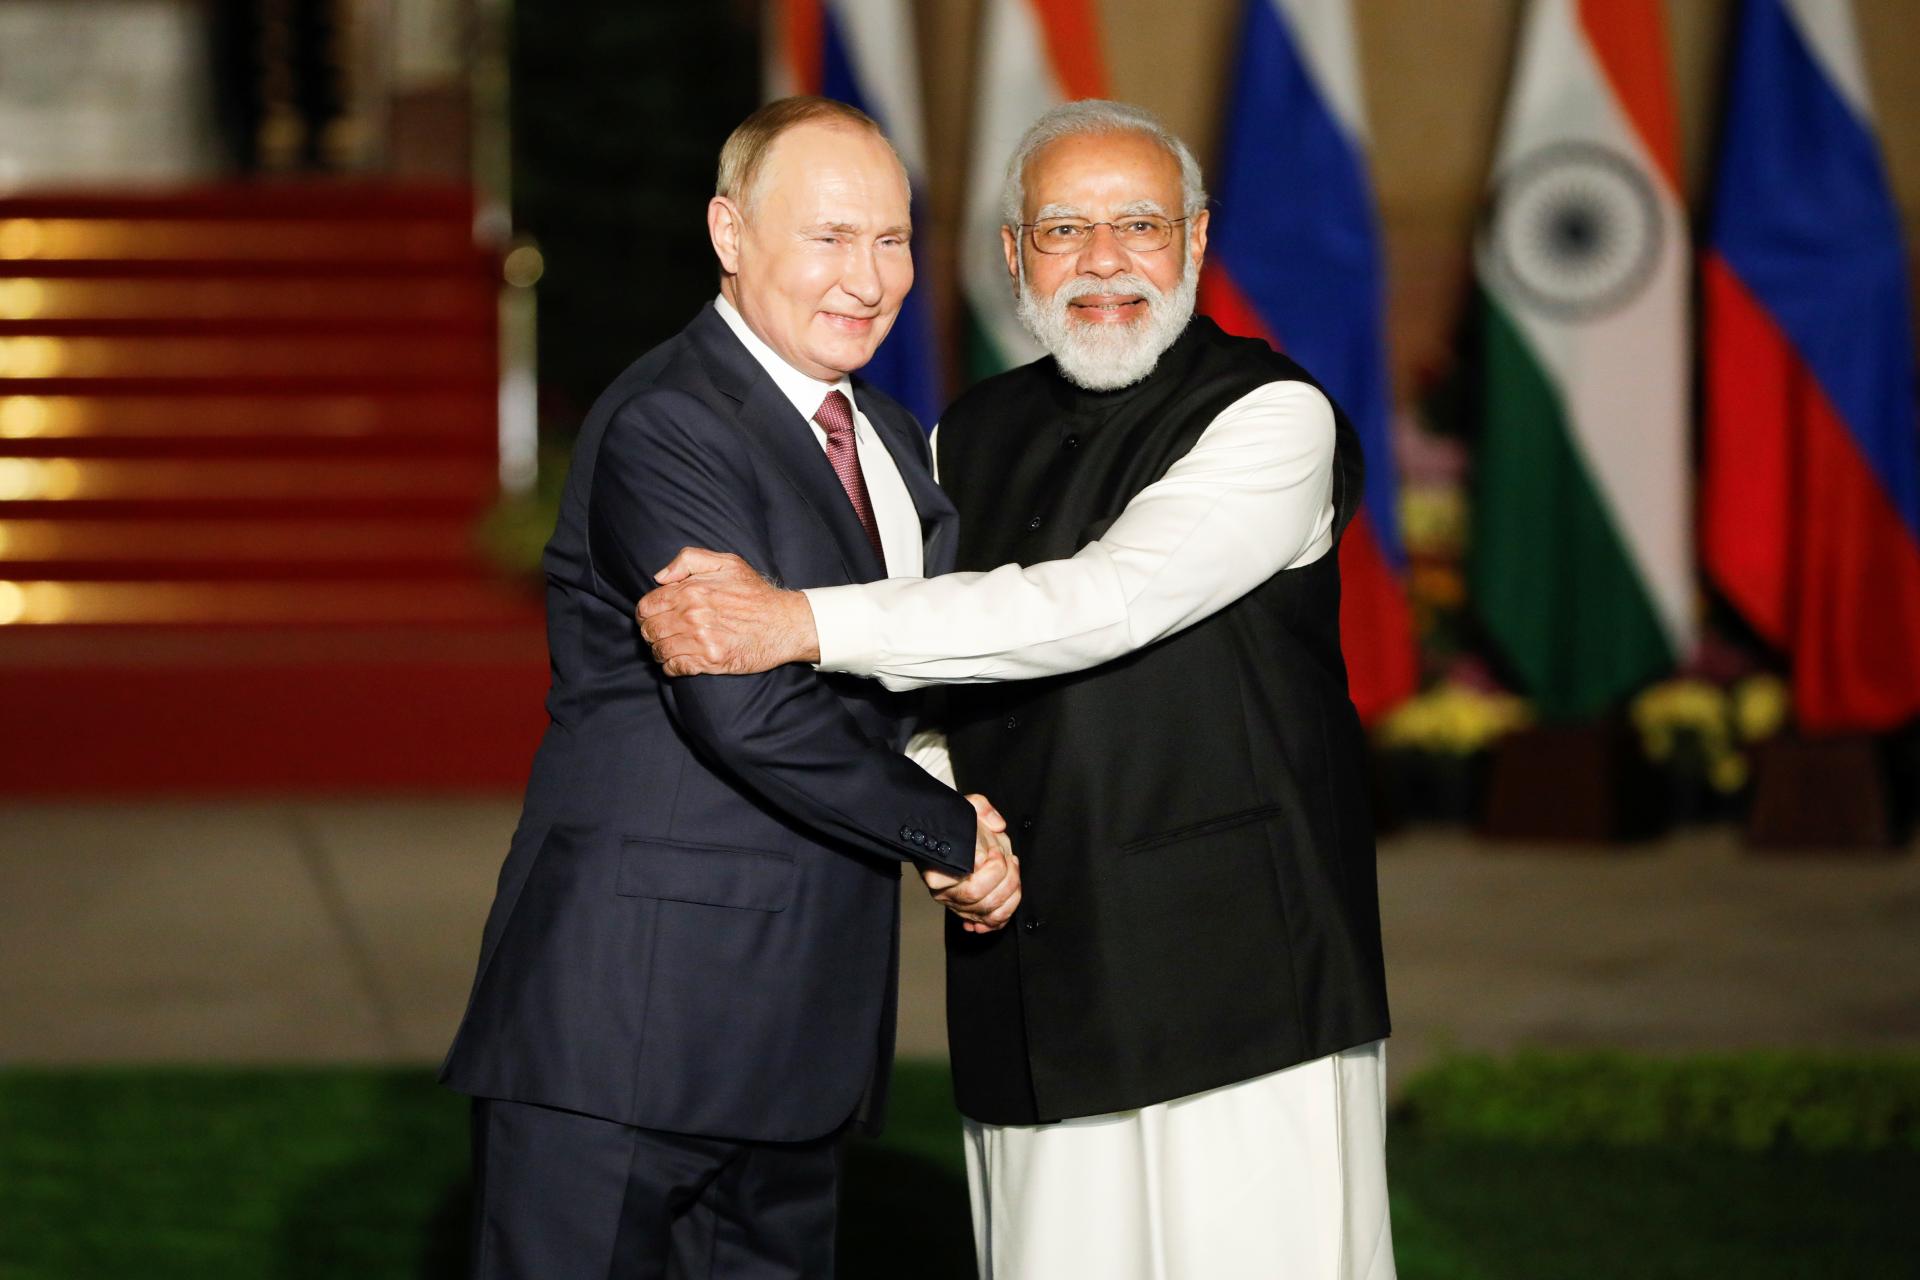 Indovia posilňujú vzťahy s Ruskom. Od Moskvy kupujú lacno ropu aj vojenskú techniku, vyvažujú vplyv Číny